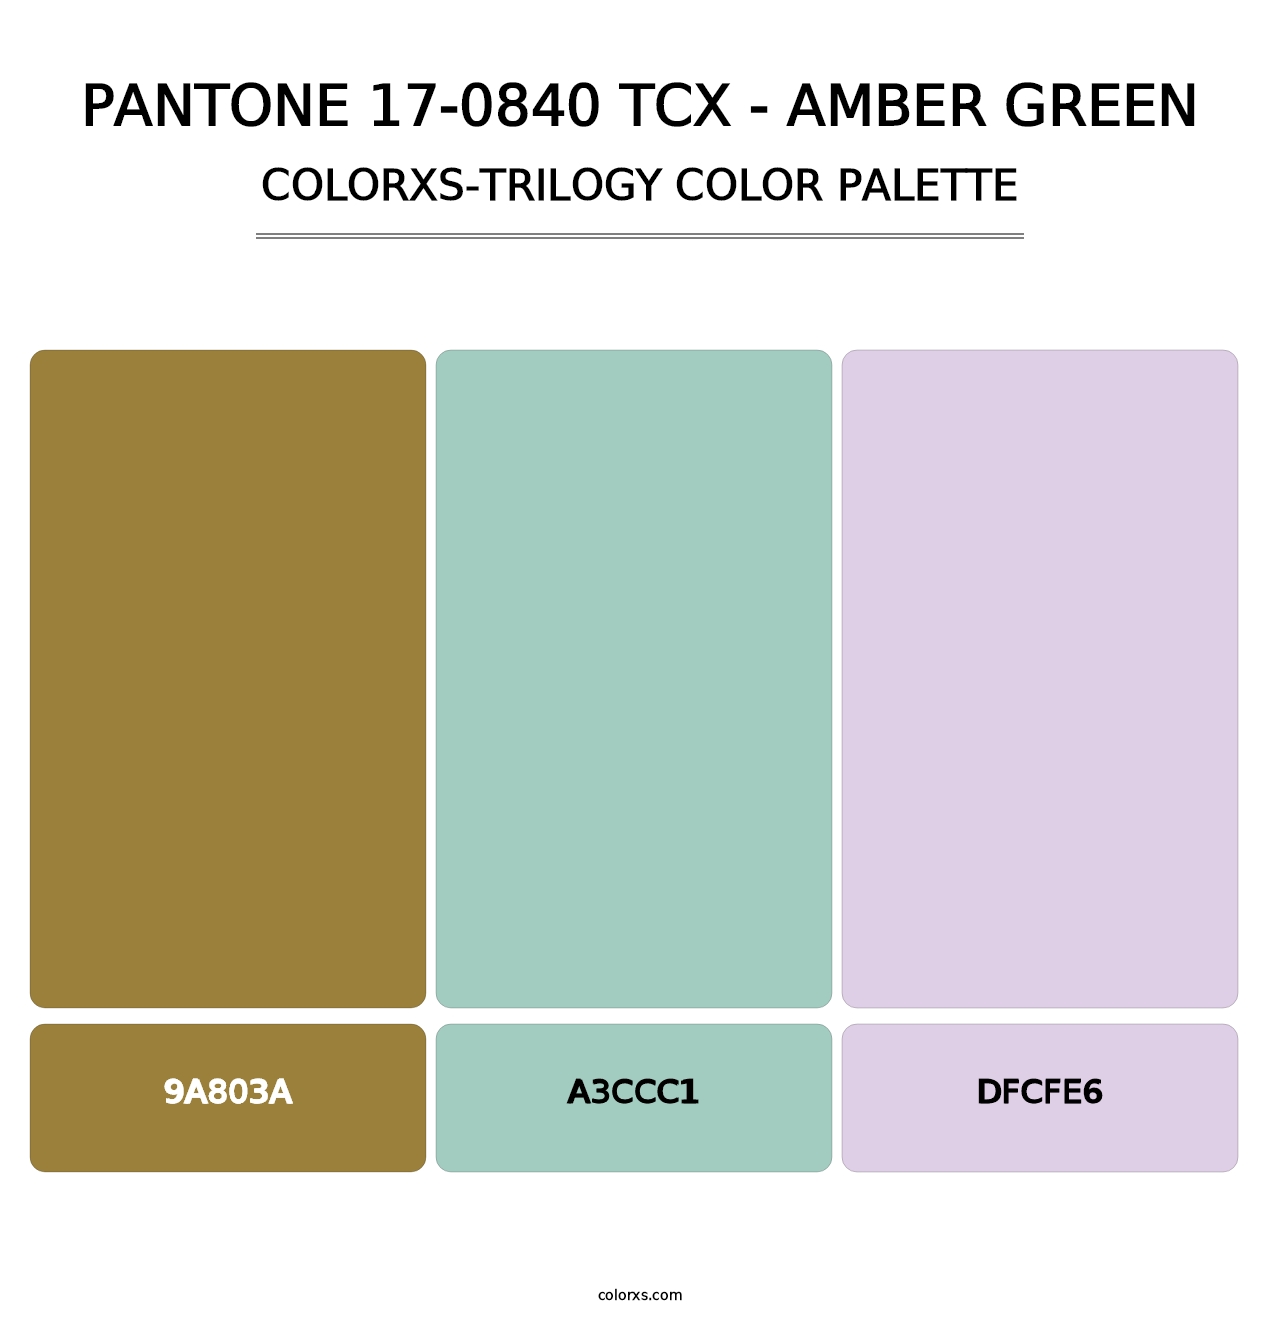 PANTONE 17-0840 TCX - Amber Green - Colorxs Trilogy Palette